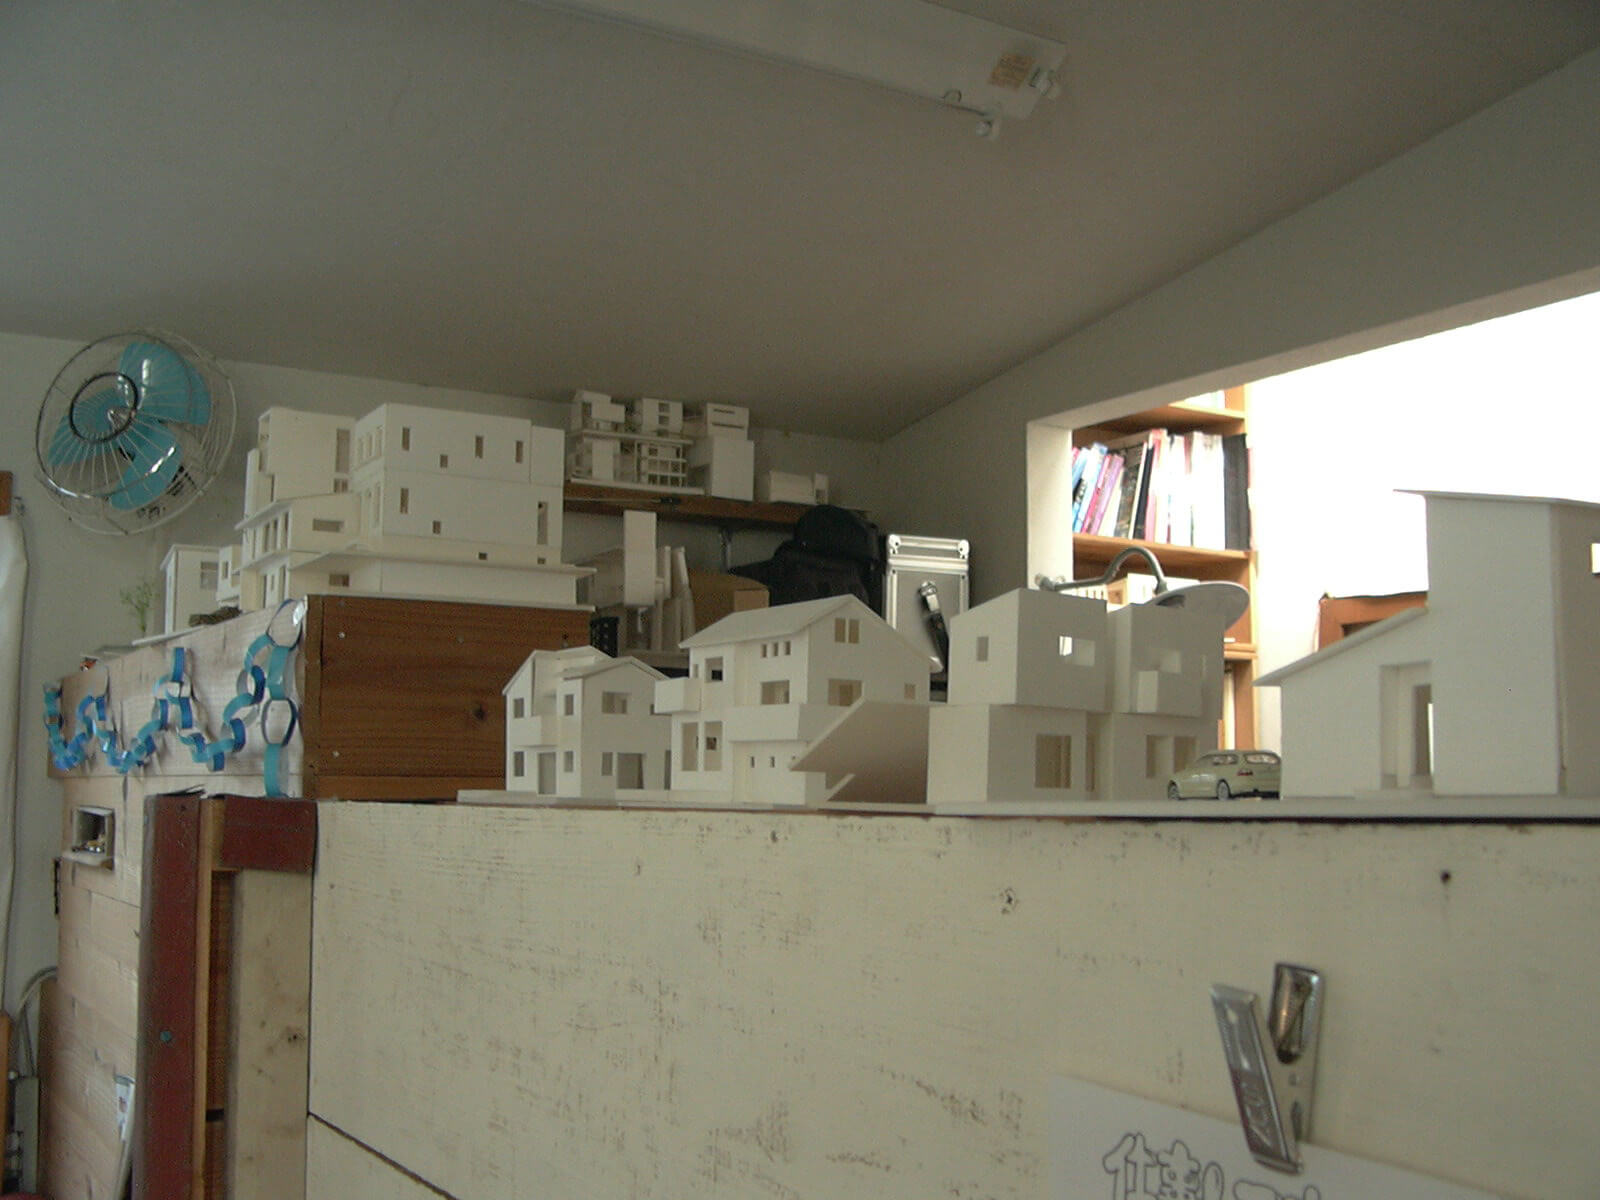 事務所の棚に並んだ住宅模型はまるでエーゲ海付近の町並み